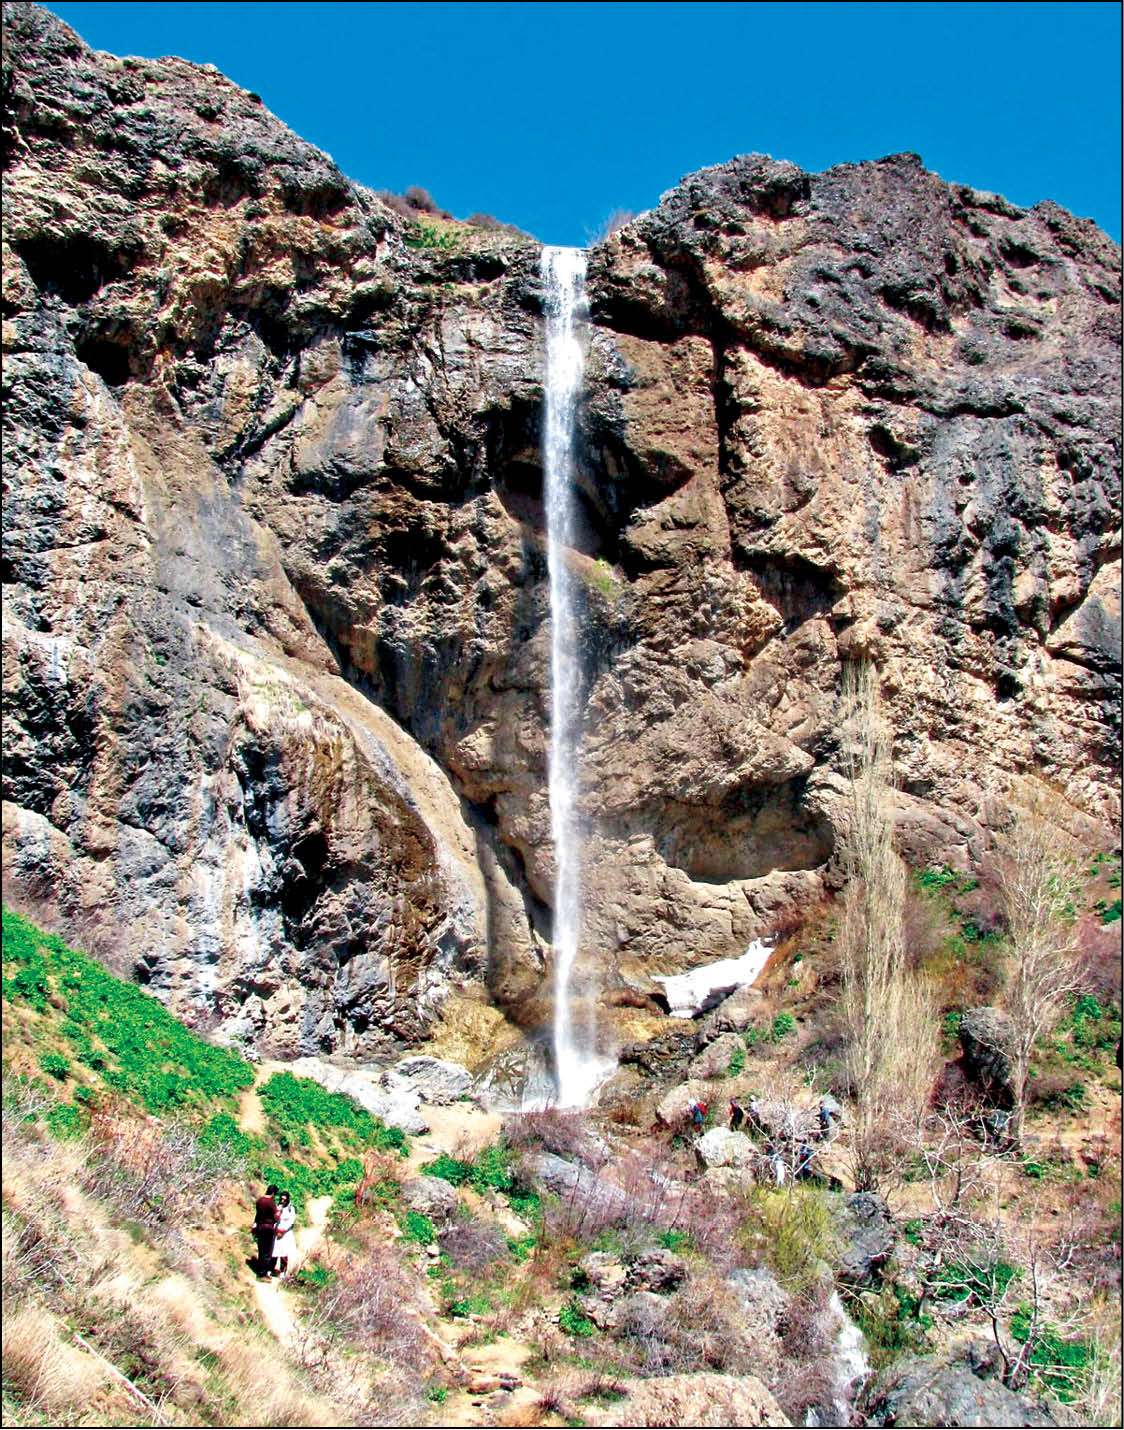 یکی از نزدیک‌ترین آبشارهای اطراف تهران که طبیعت زیبایی دارد آبشار سنگان است